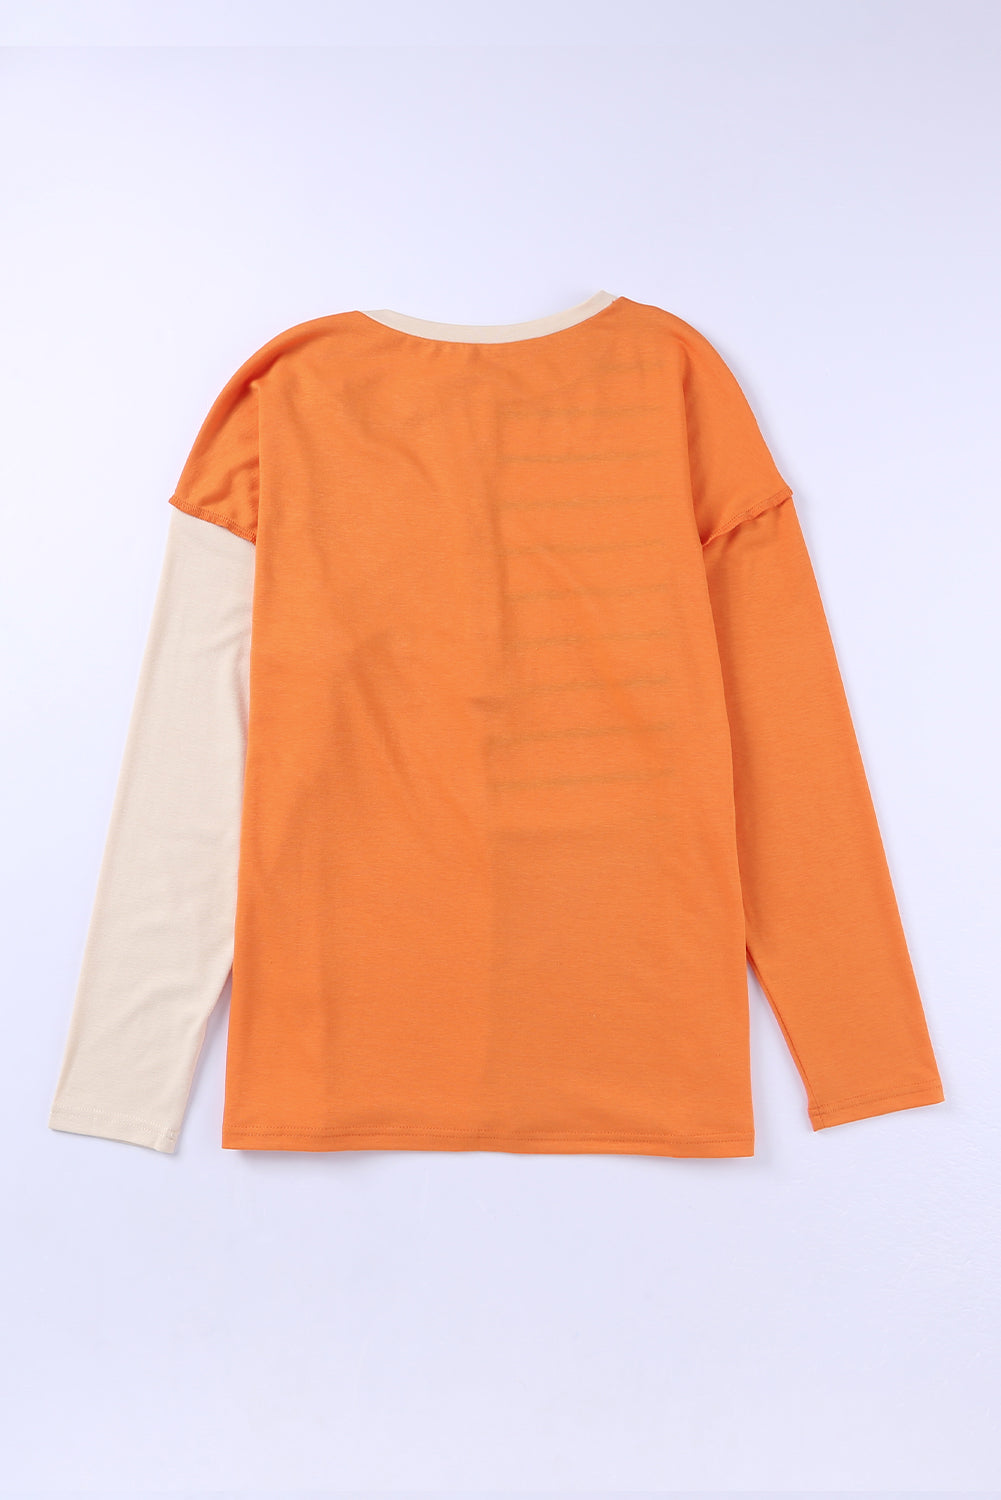 Langarm-Henley-Oberteil mit orangefarbenen Streifen und Farbblock-Spleißen